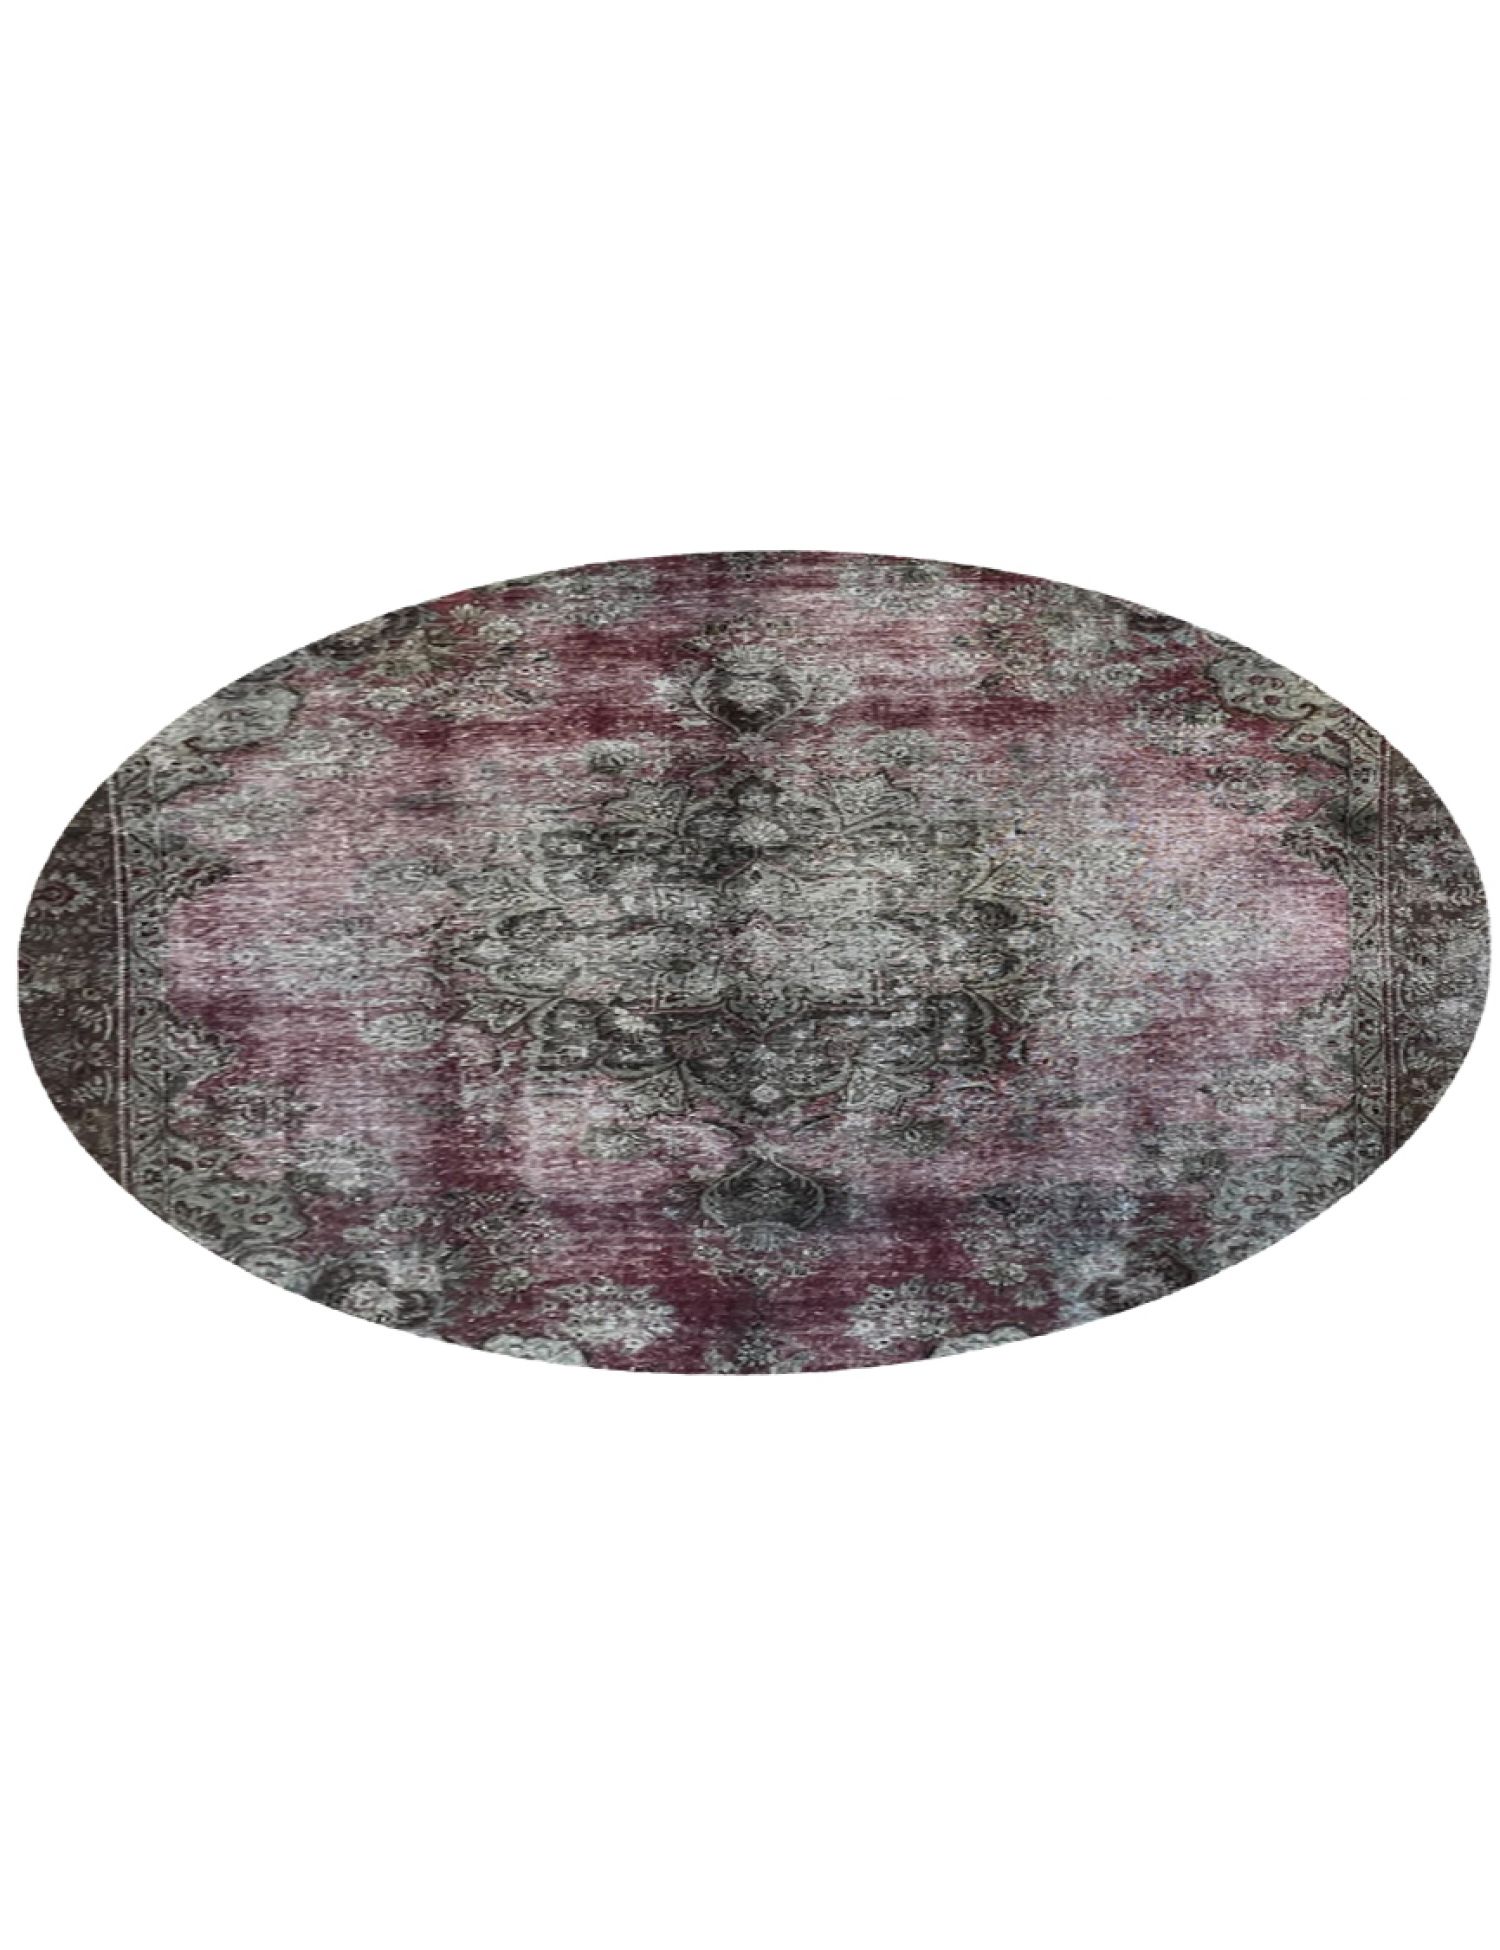 Vintage Teppich rund  lila <br/>261 x 261 cm